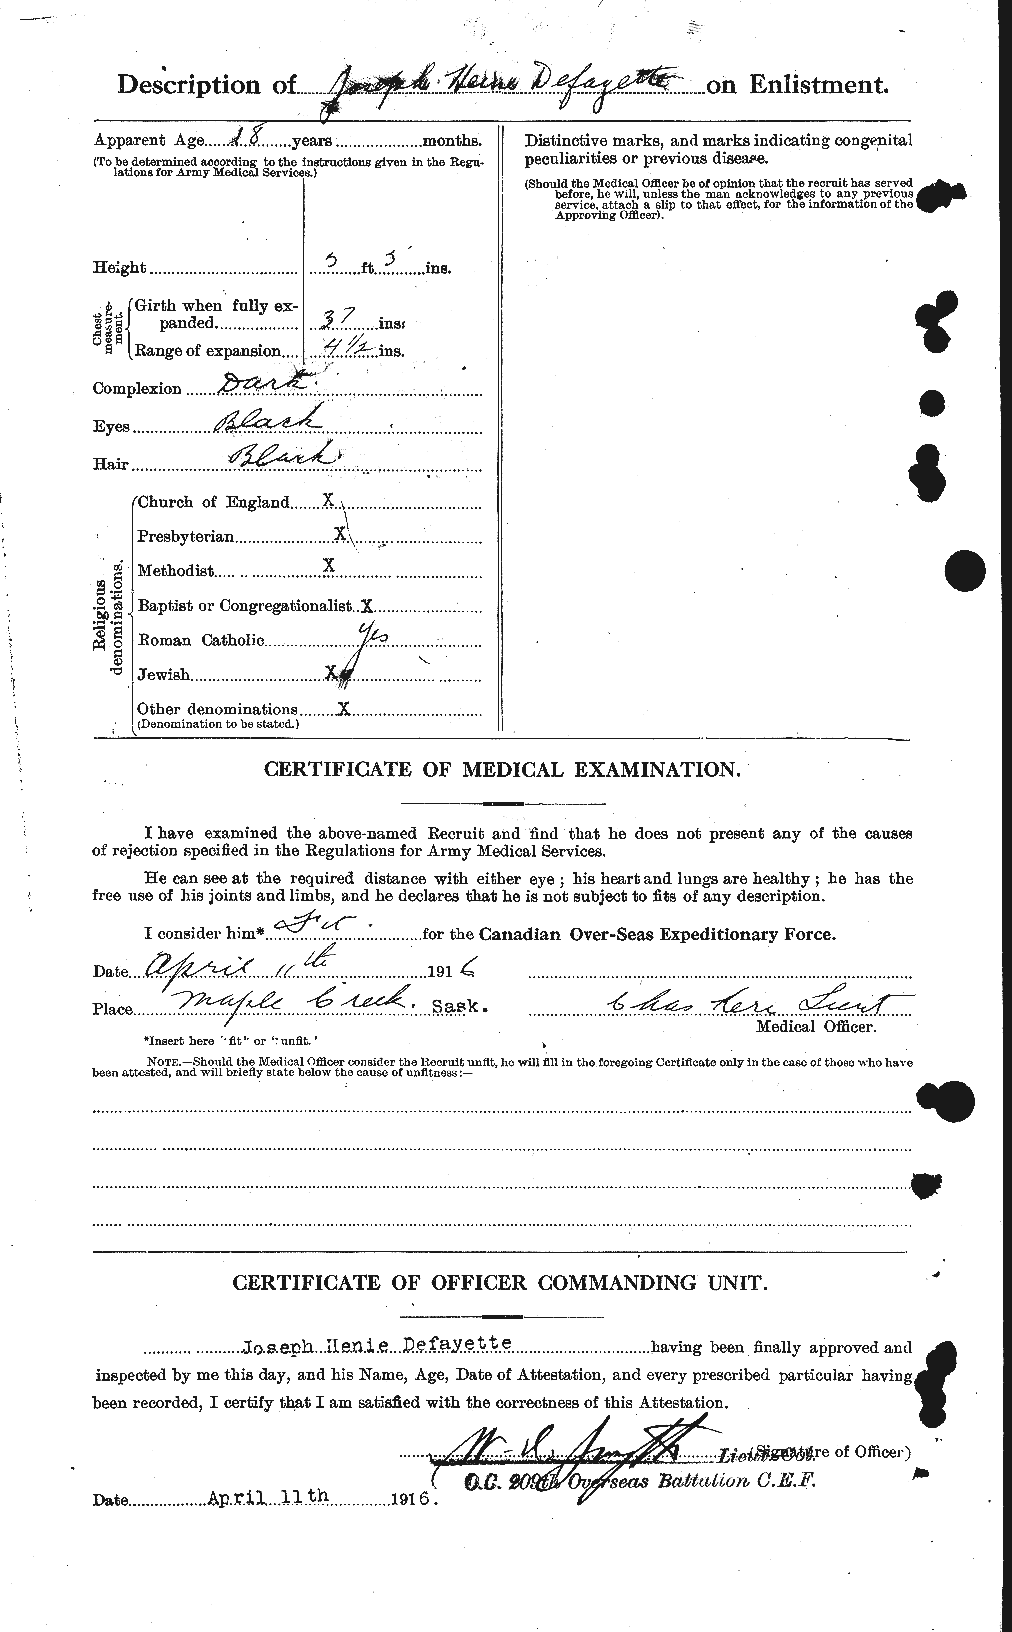 Dossiers du Personnel de la Première Guerre mondiale - CEC 285837b